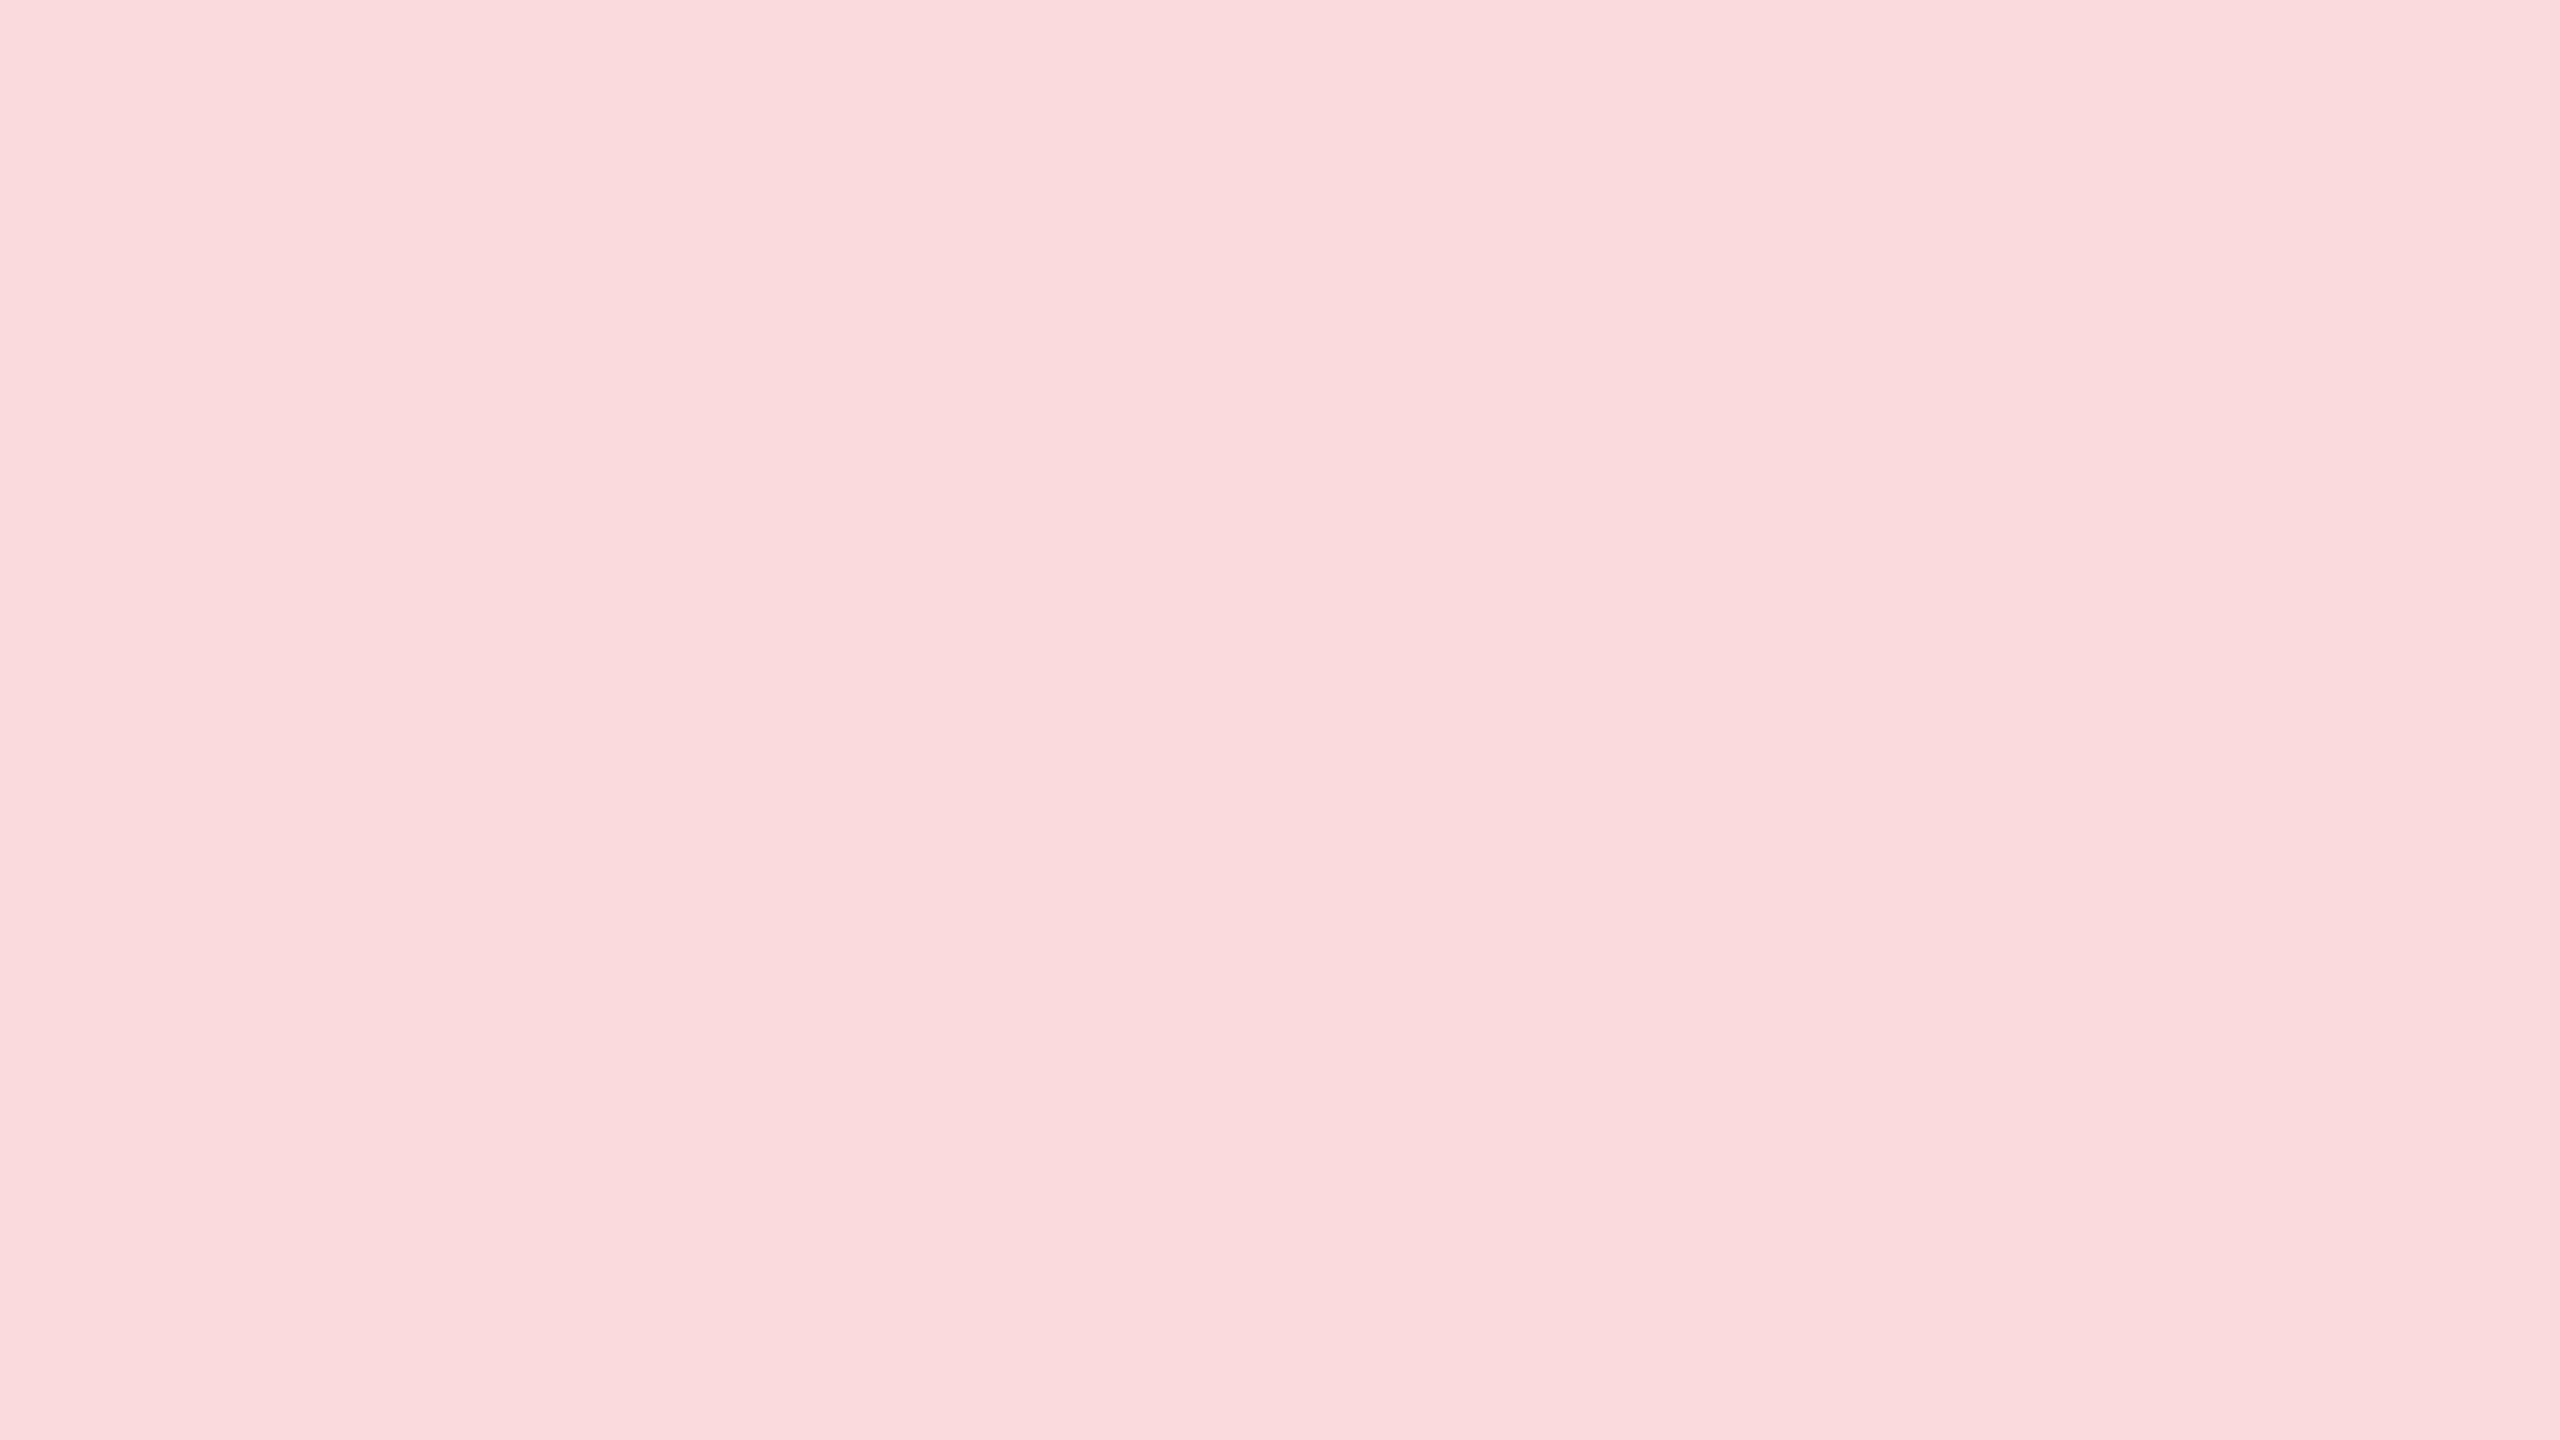 2560 x 1440 · jpeg - Climatesense: Aesthetic Light Pink Pastel Background